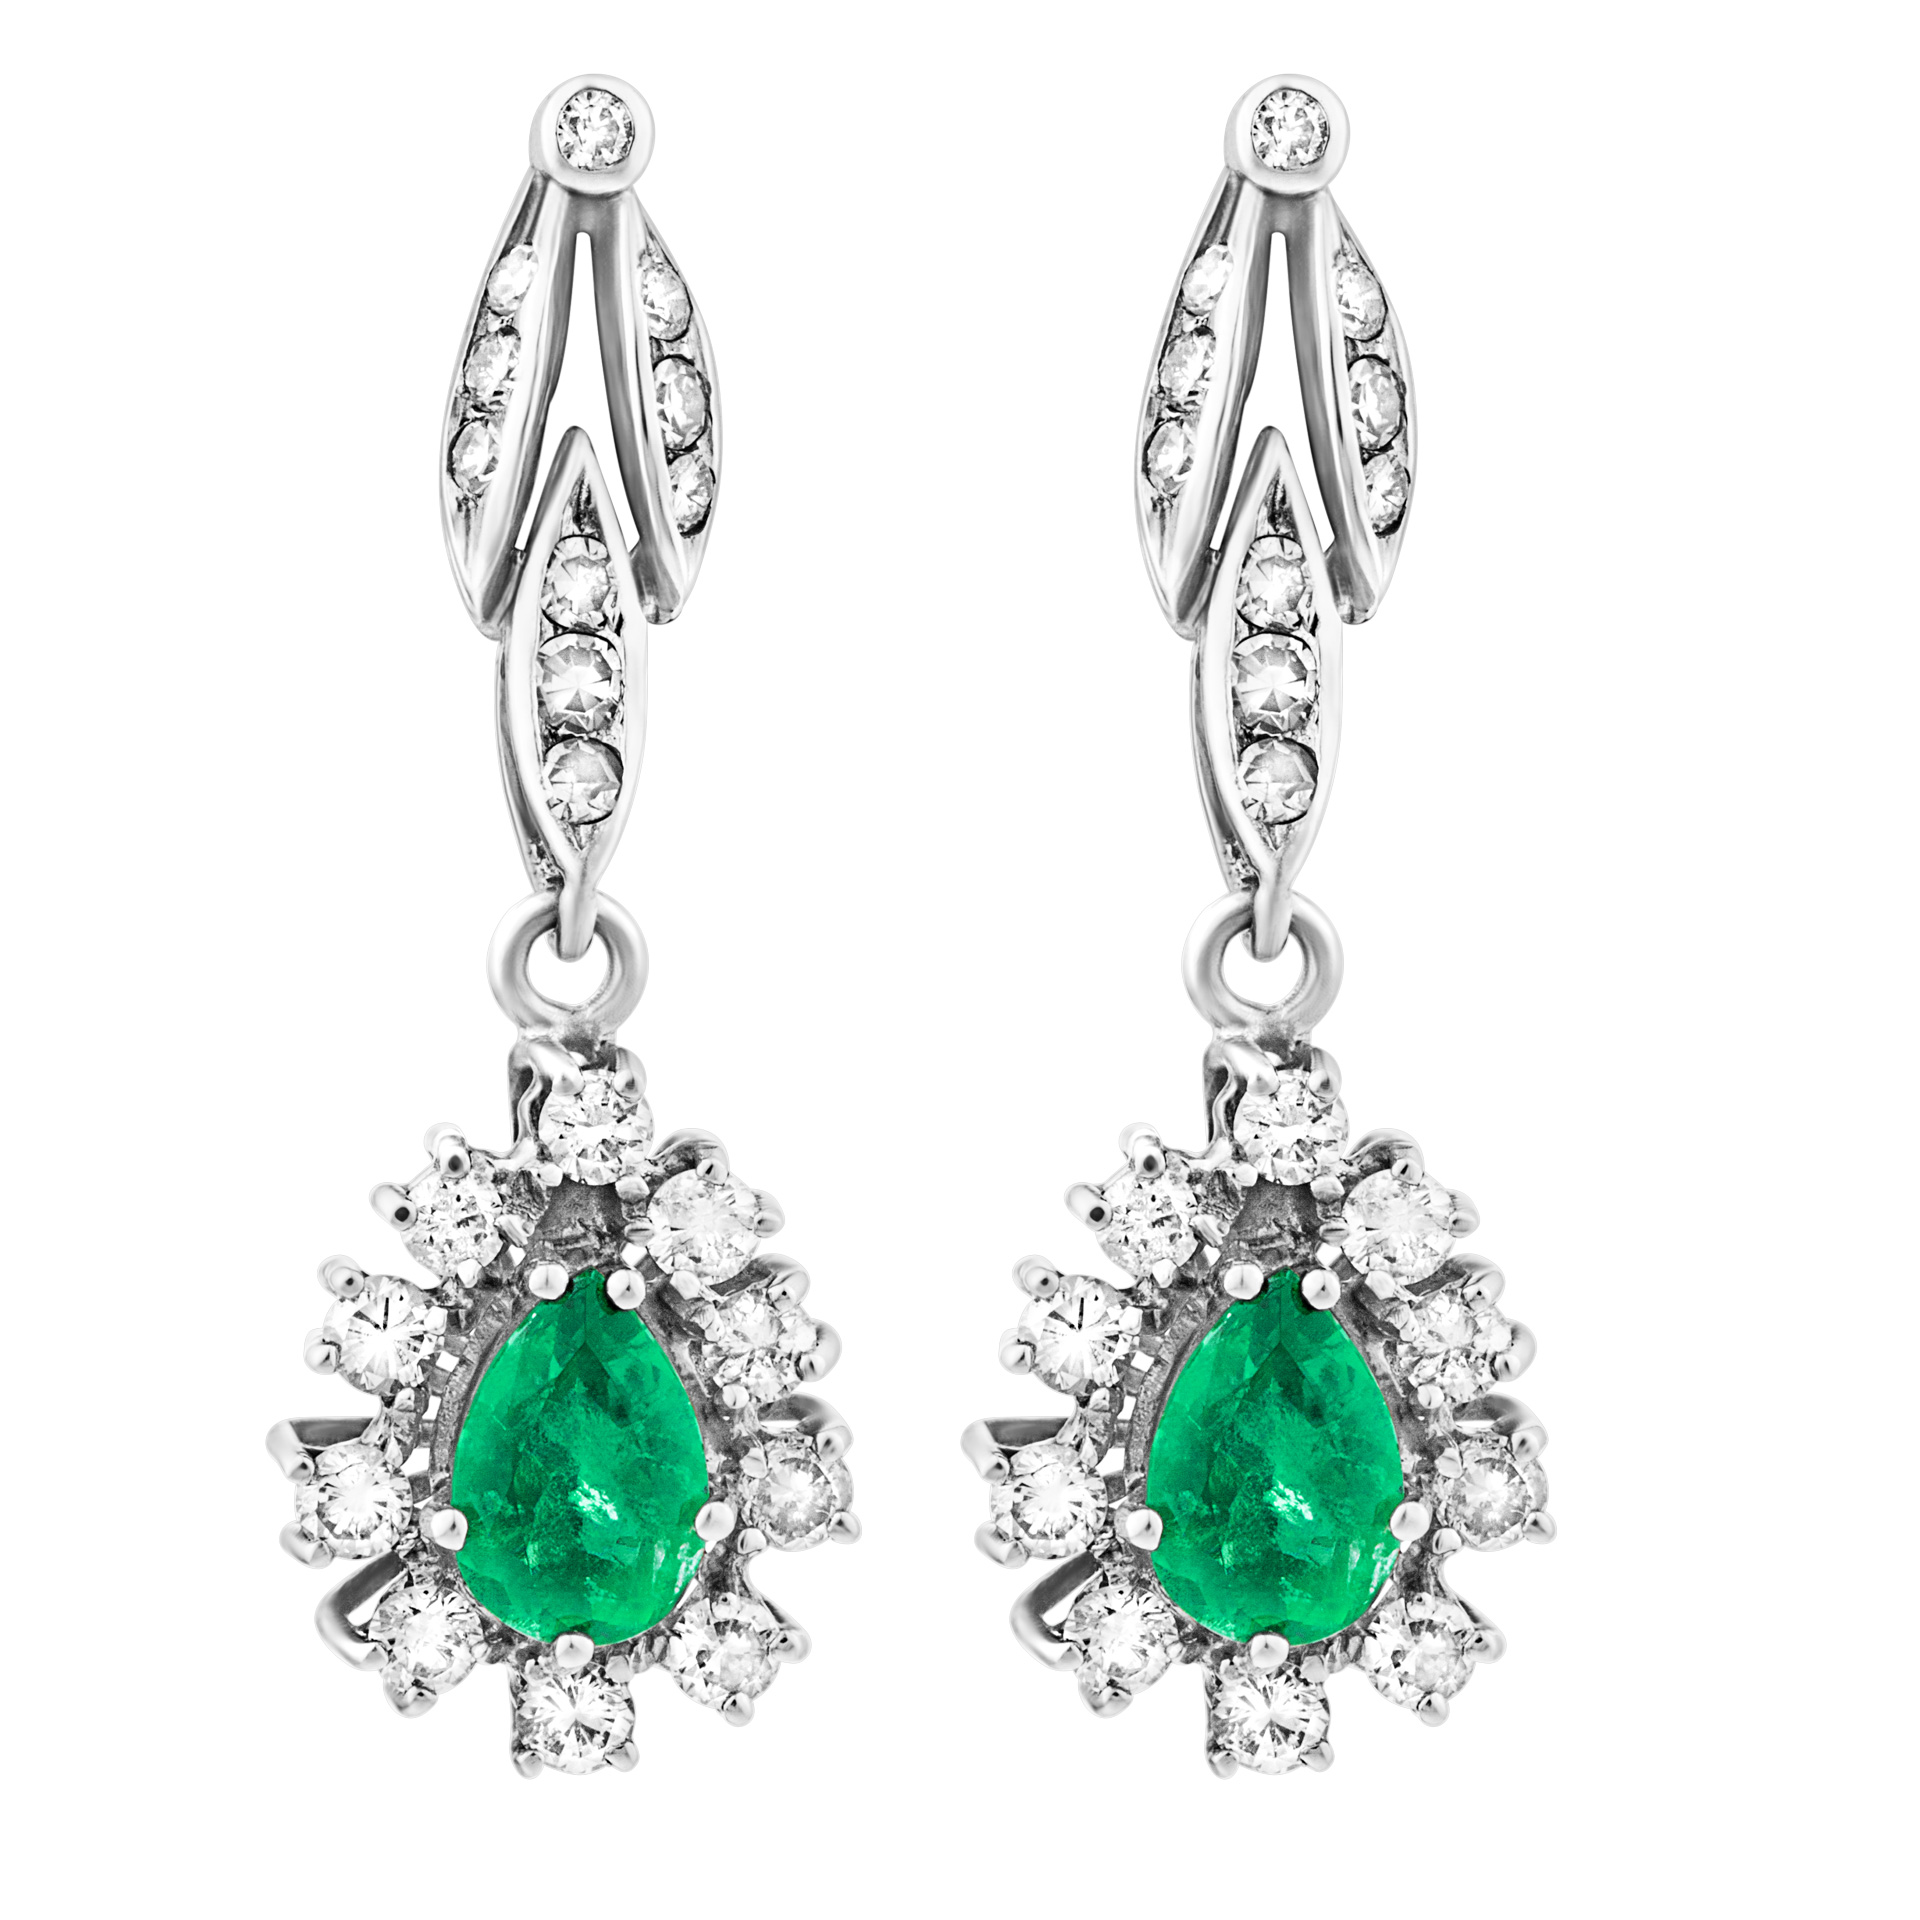 18k white gold dangling tear drop emerald earrings ctw appr. 2 carats with app. 1 carat in diamonds